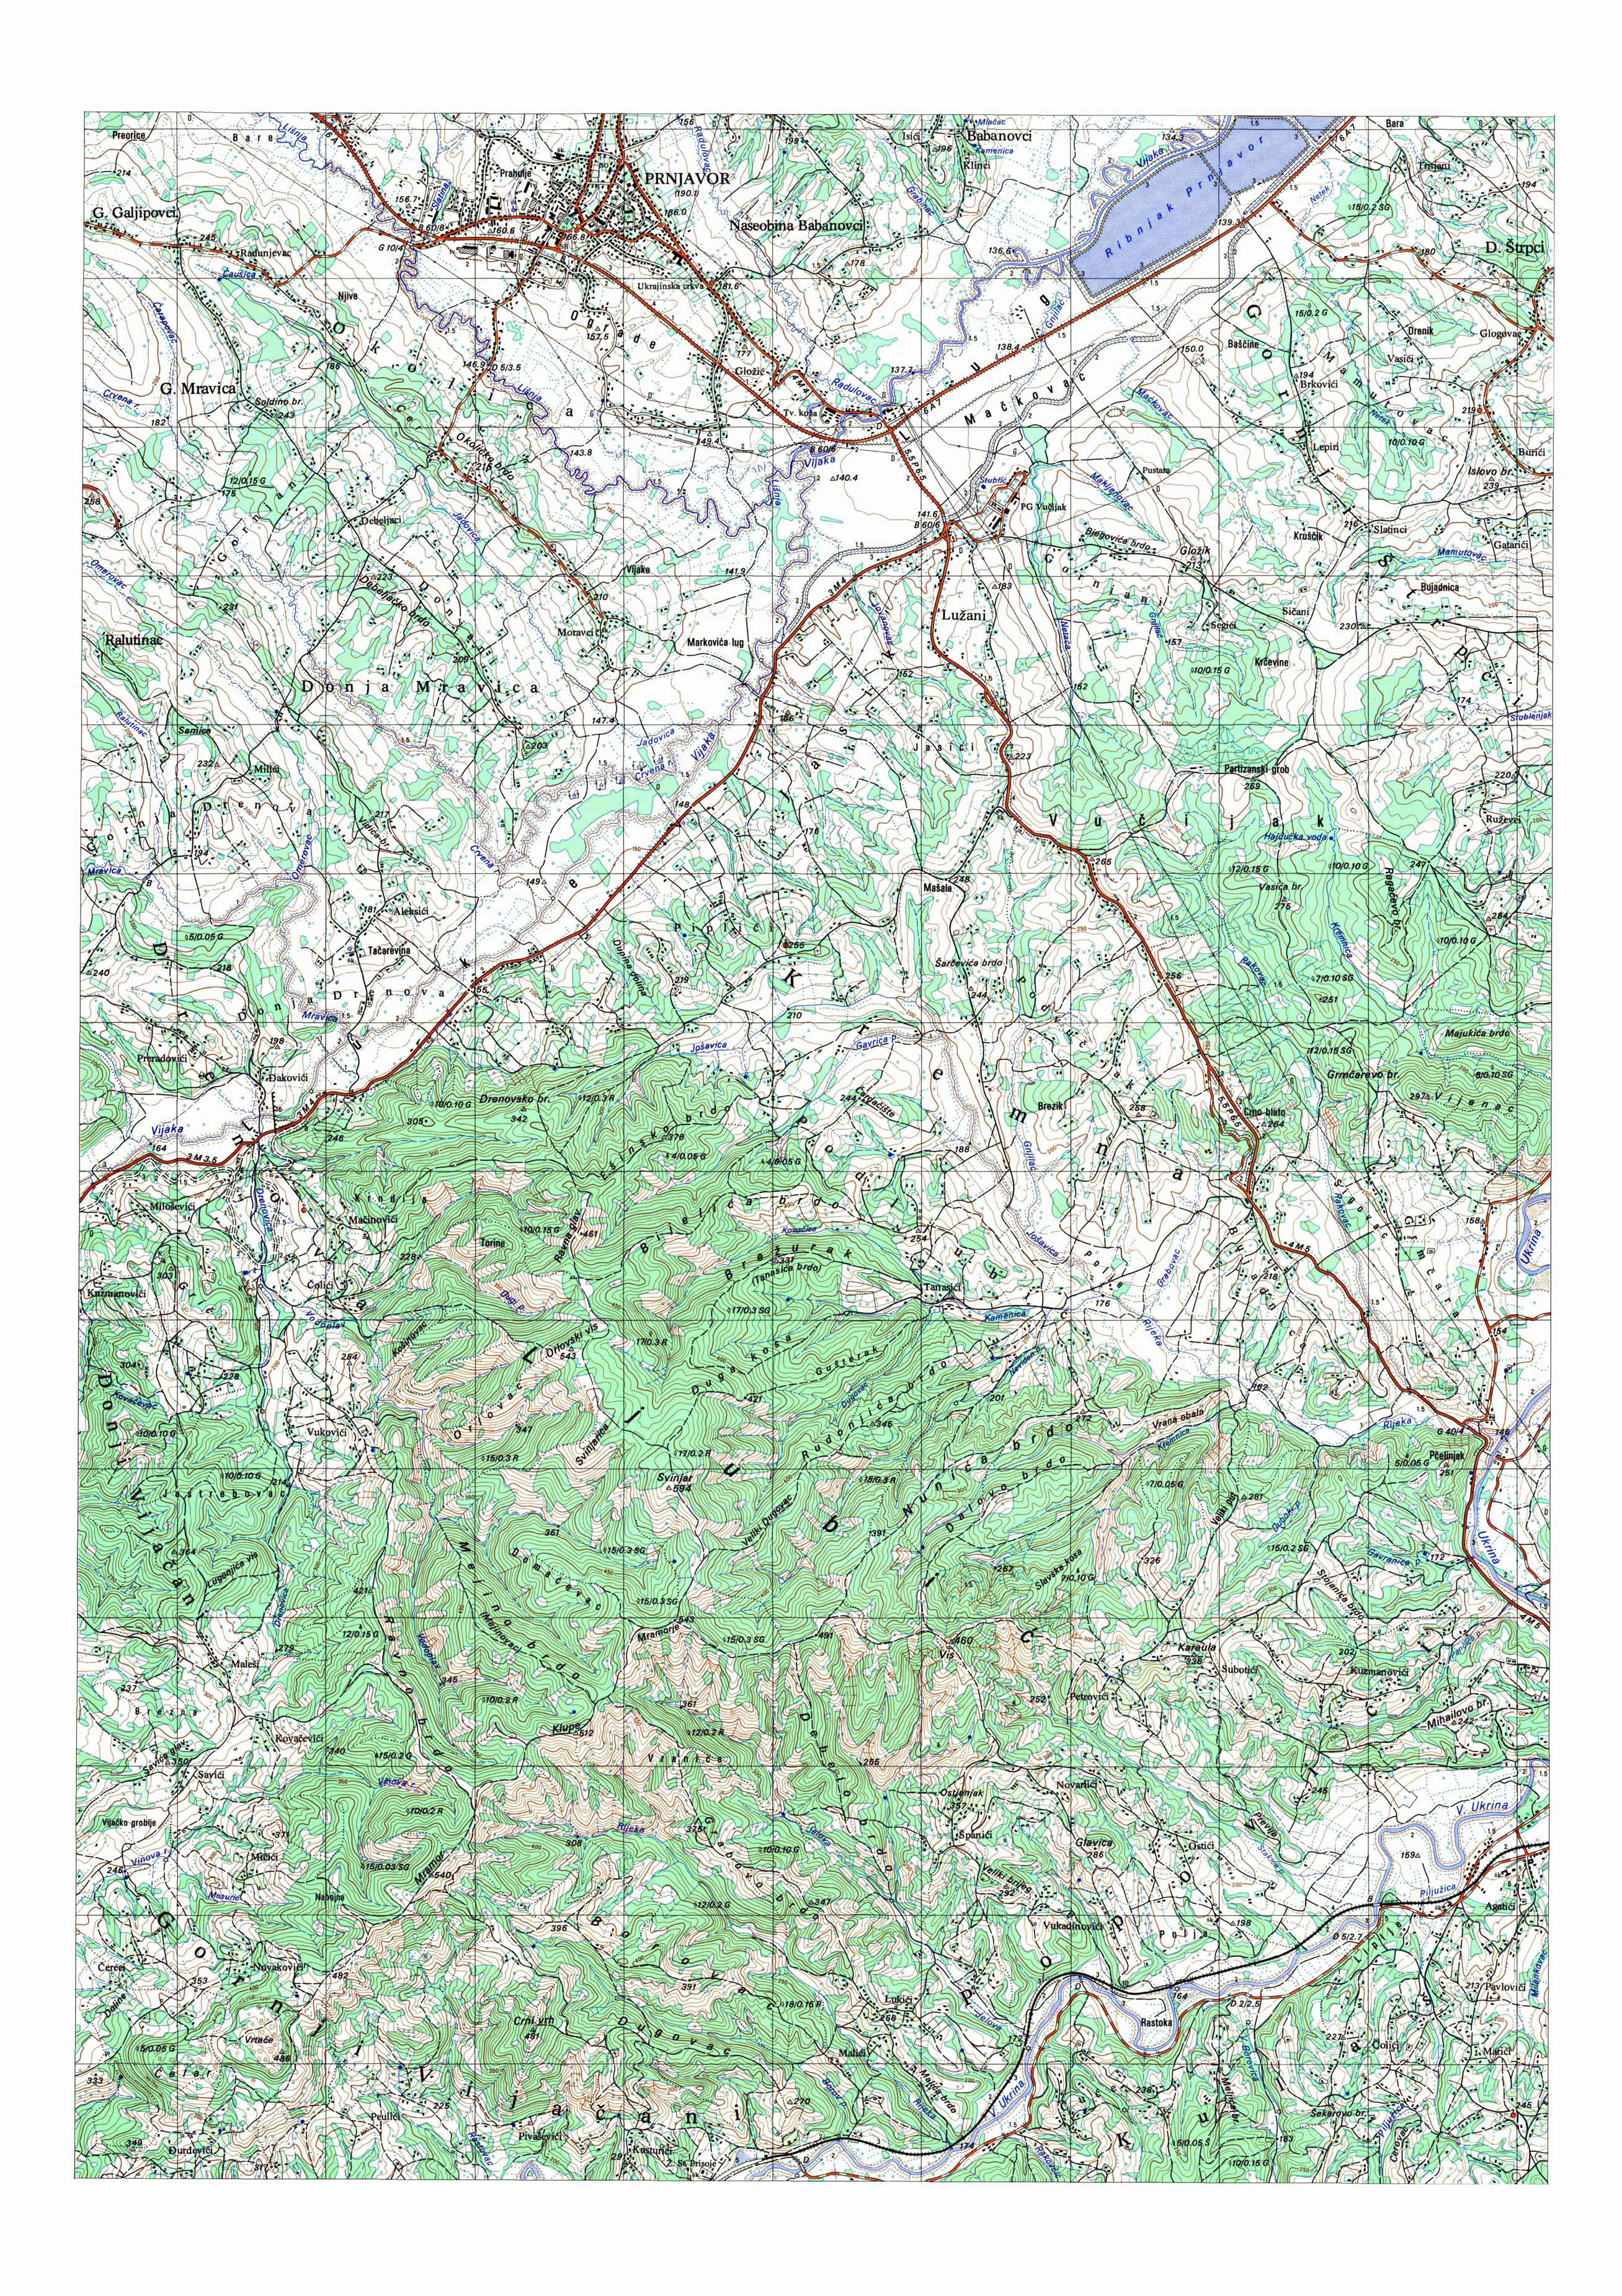  topografska karta BiH 25000 JNA  prnjavor jug